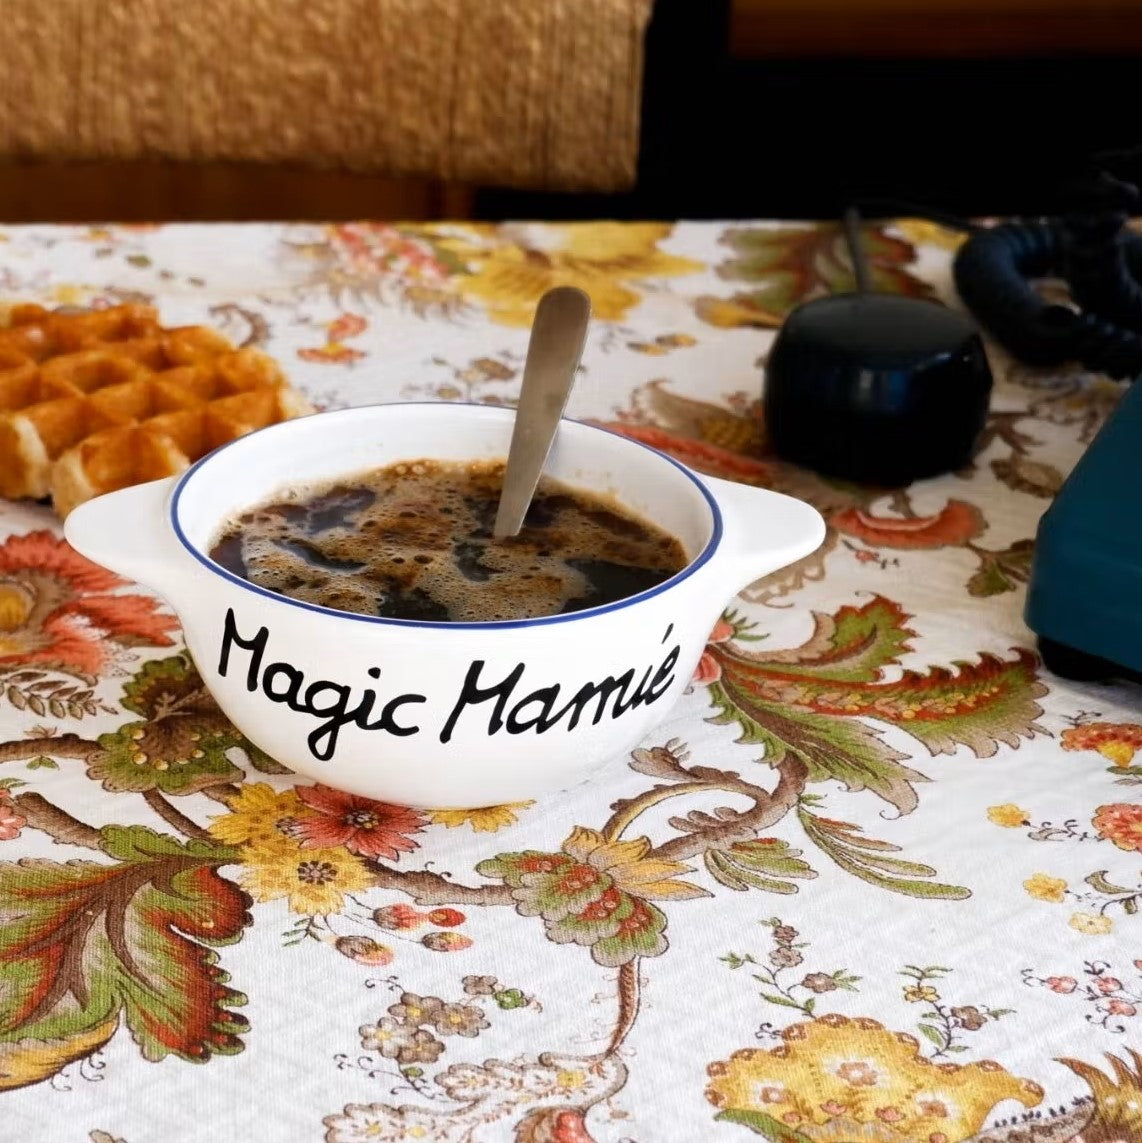 Breton bowl | Magic granny